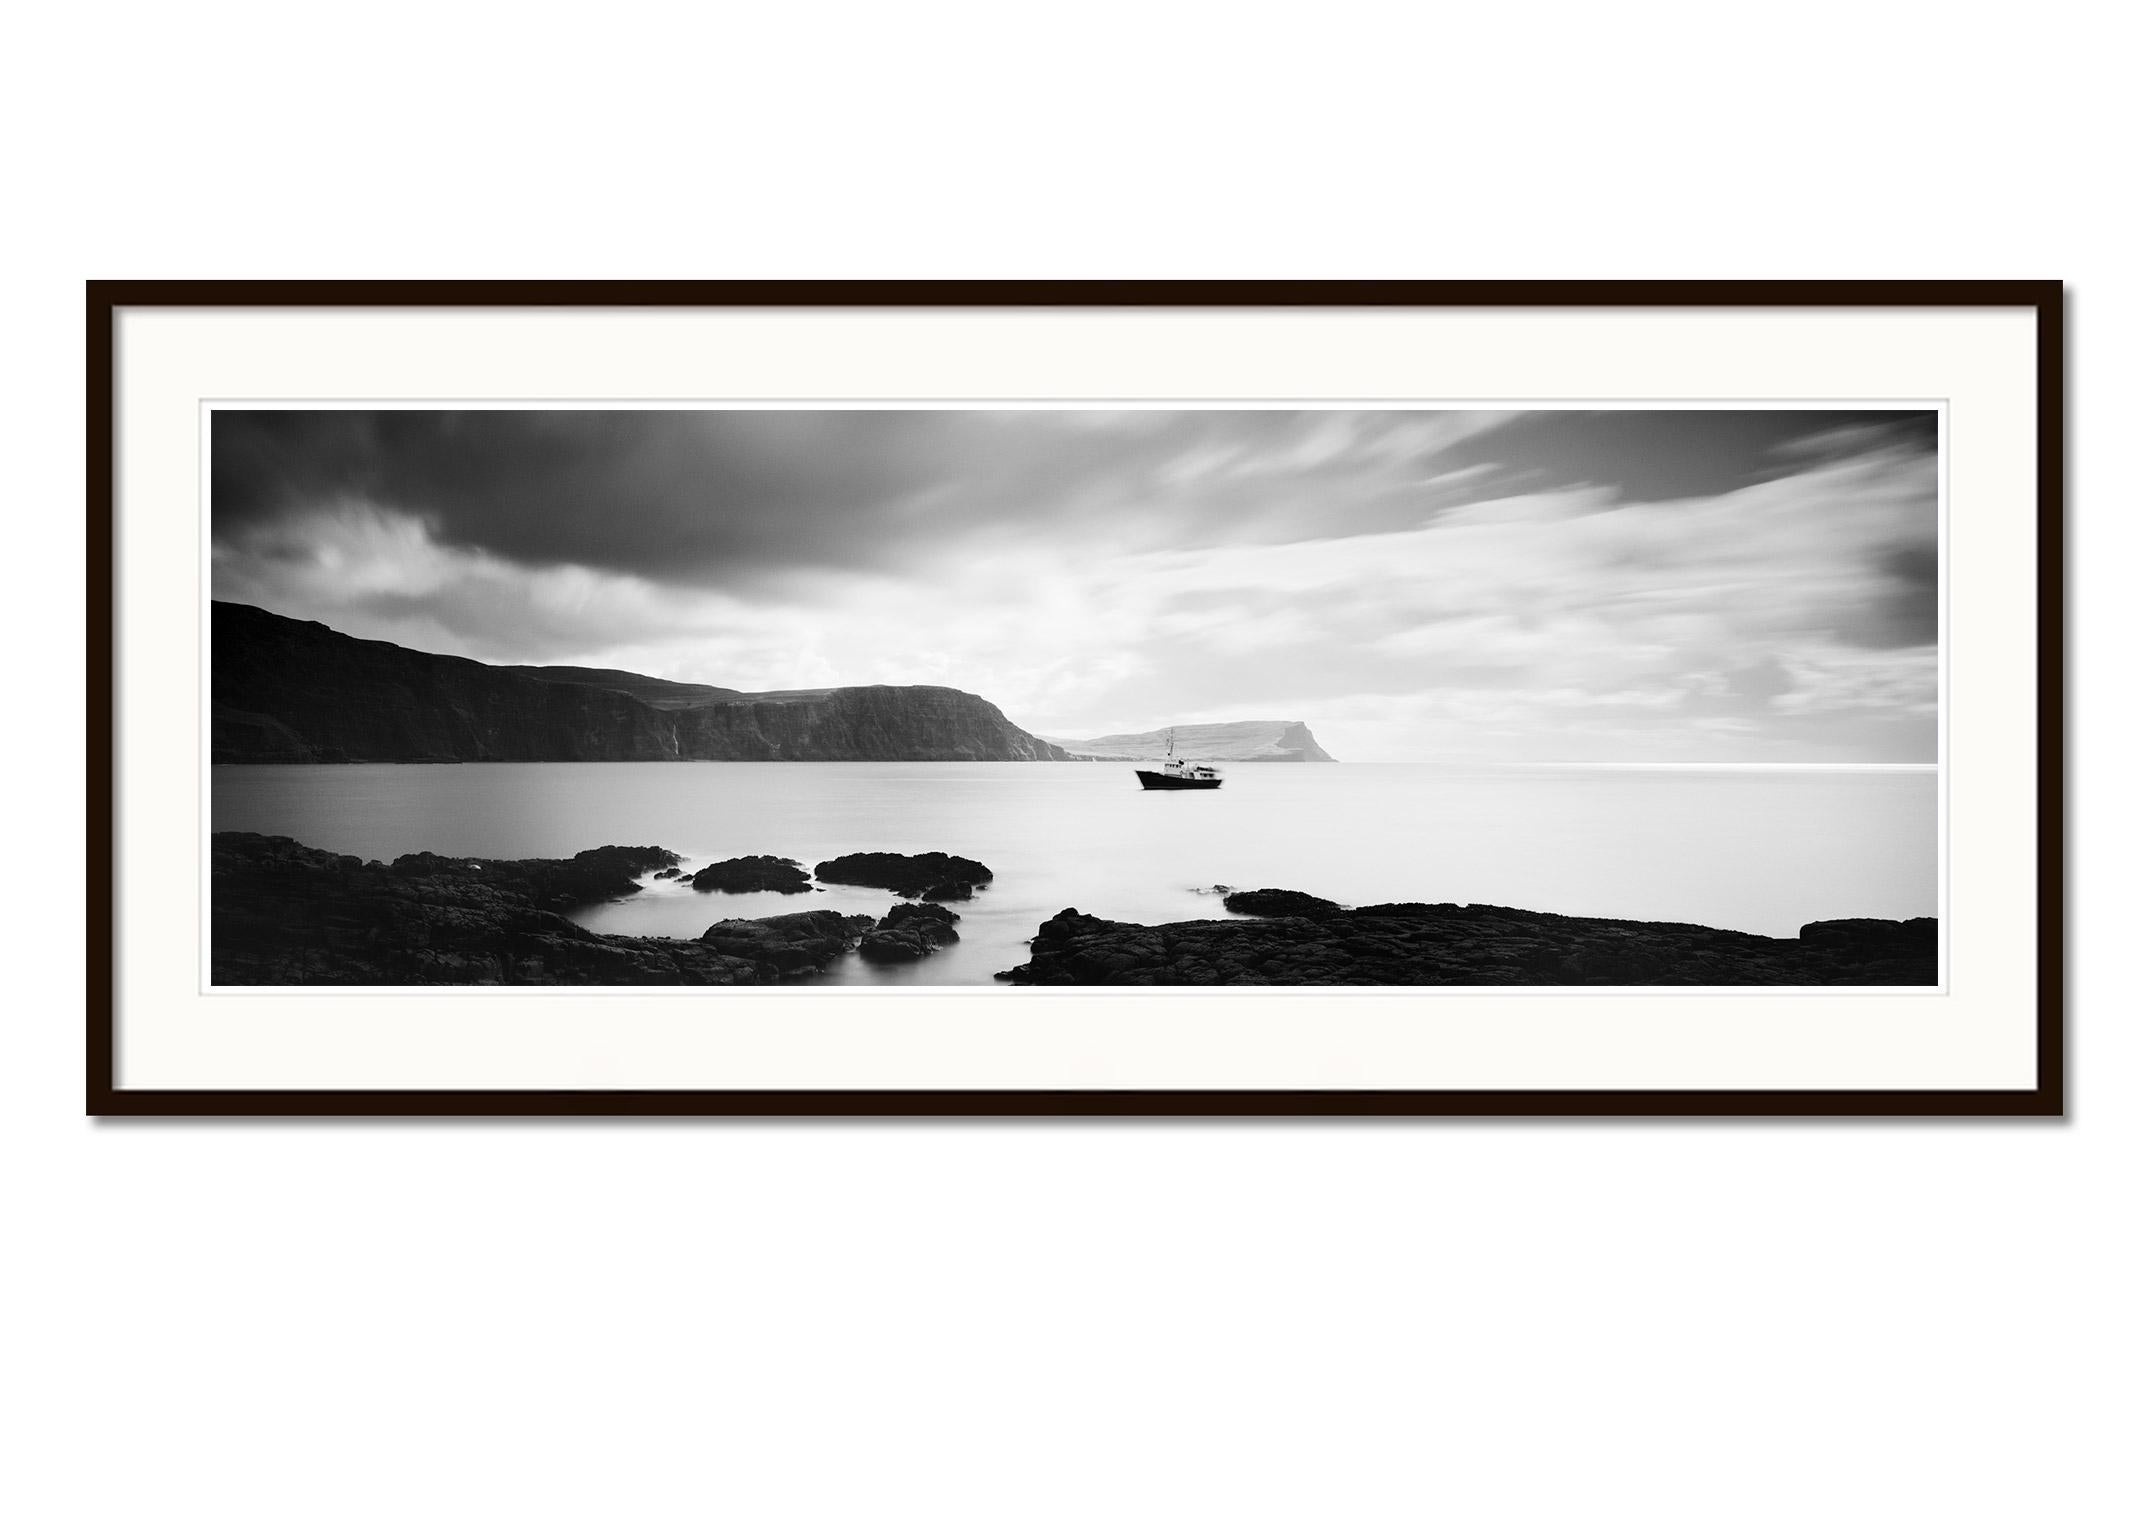 Fishing Boat Panorama, Küste, Schottland, Schwarz-Weiß-Wasserlandschaftsfotografie (Grau), Black and White Photograph, von Gerald Berghammer